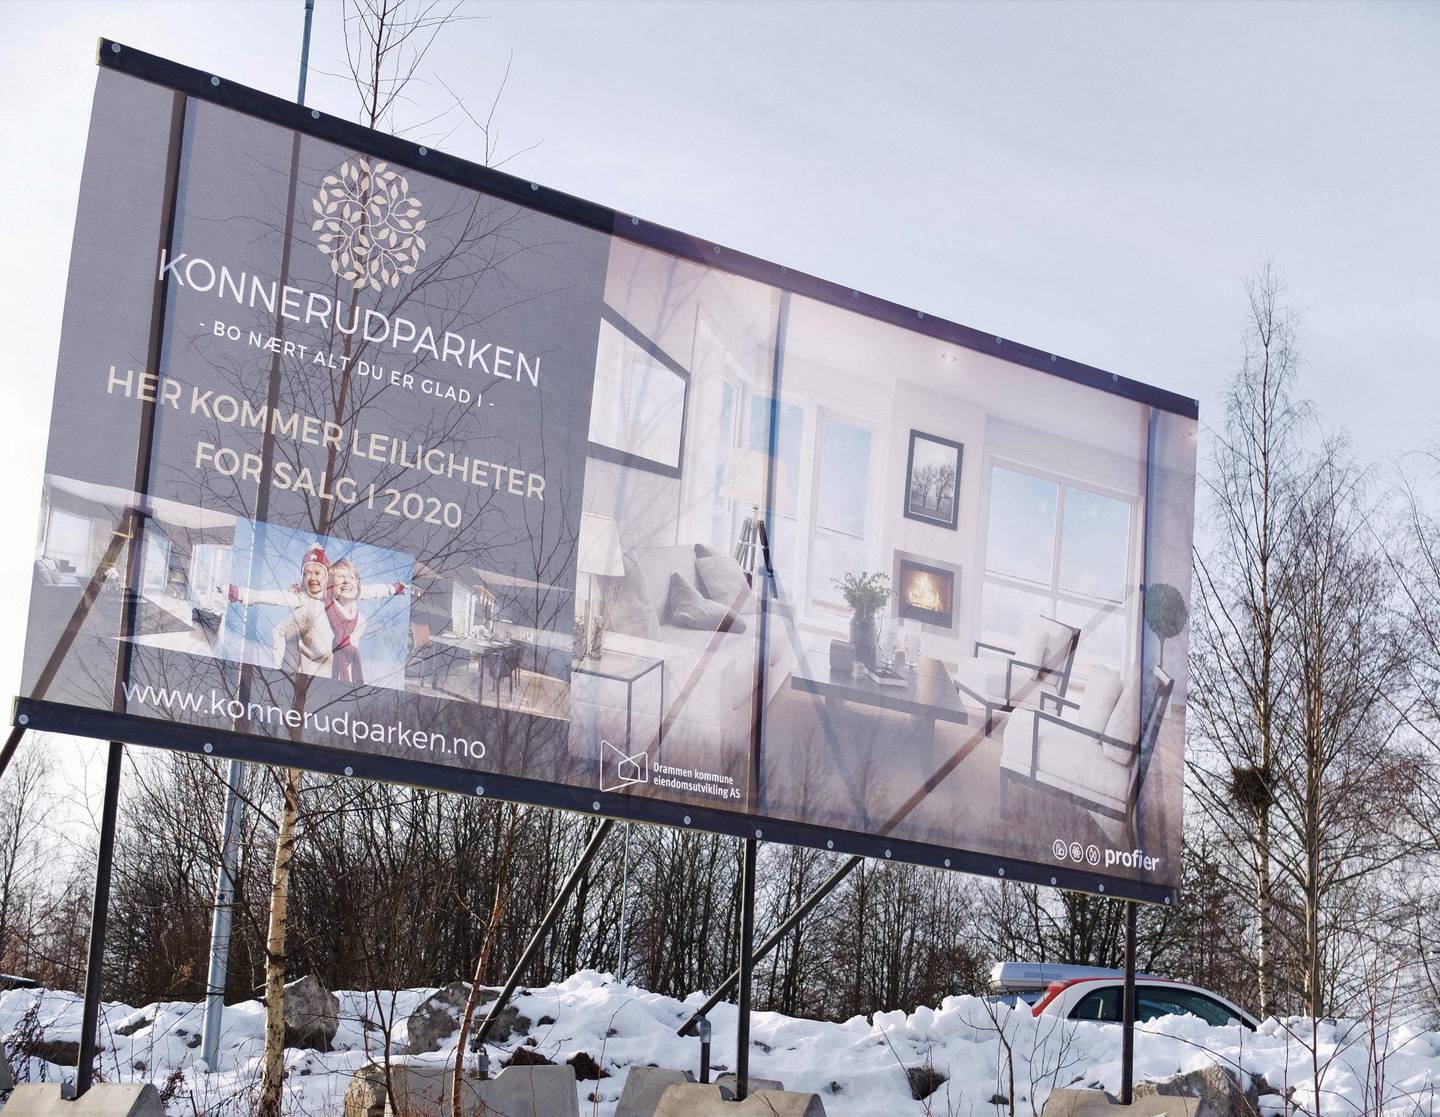 At leiligheter markedsføres allerede før godkjent reguleringsplan foreligger, provoserer de som fremdeles håper å påvirke den. Drammen kommunes eget eiendomsutviklingsselskap (DKEU) er deleier i komplekset det reklameres for.